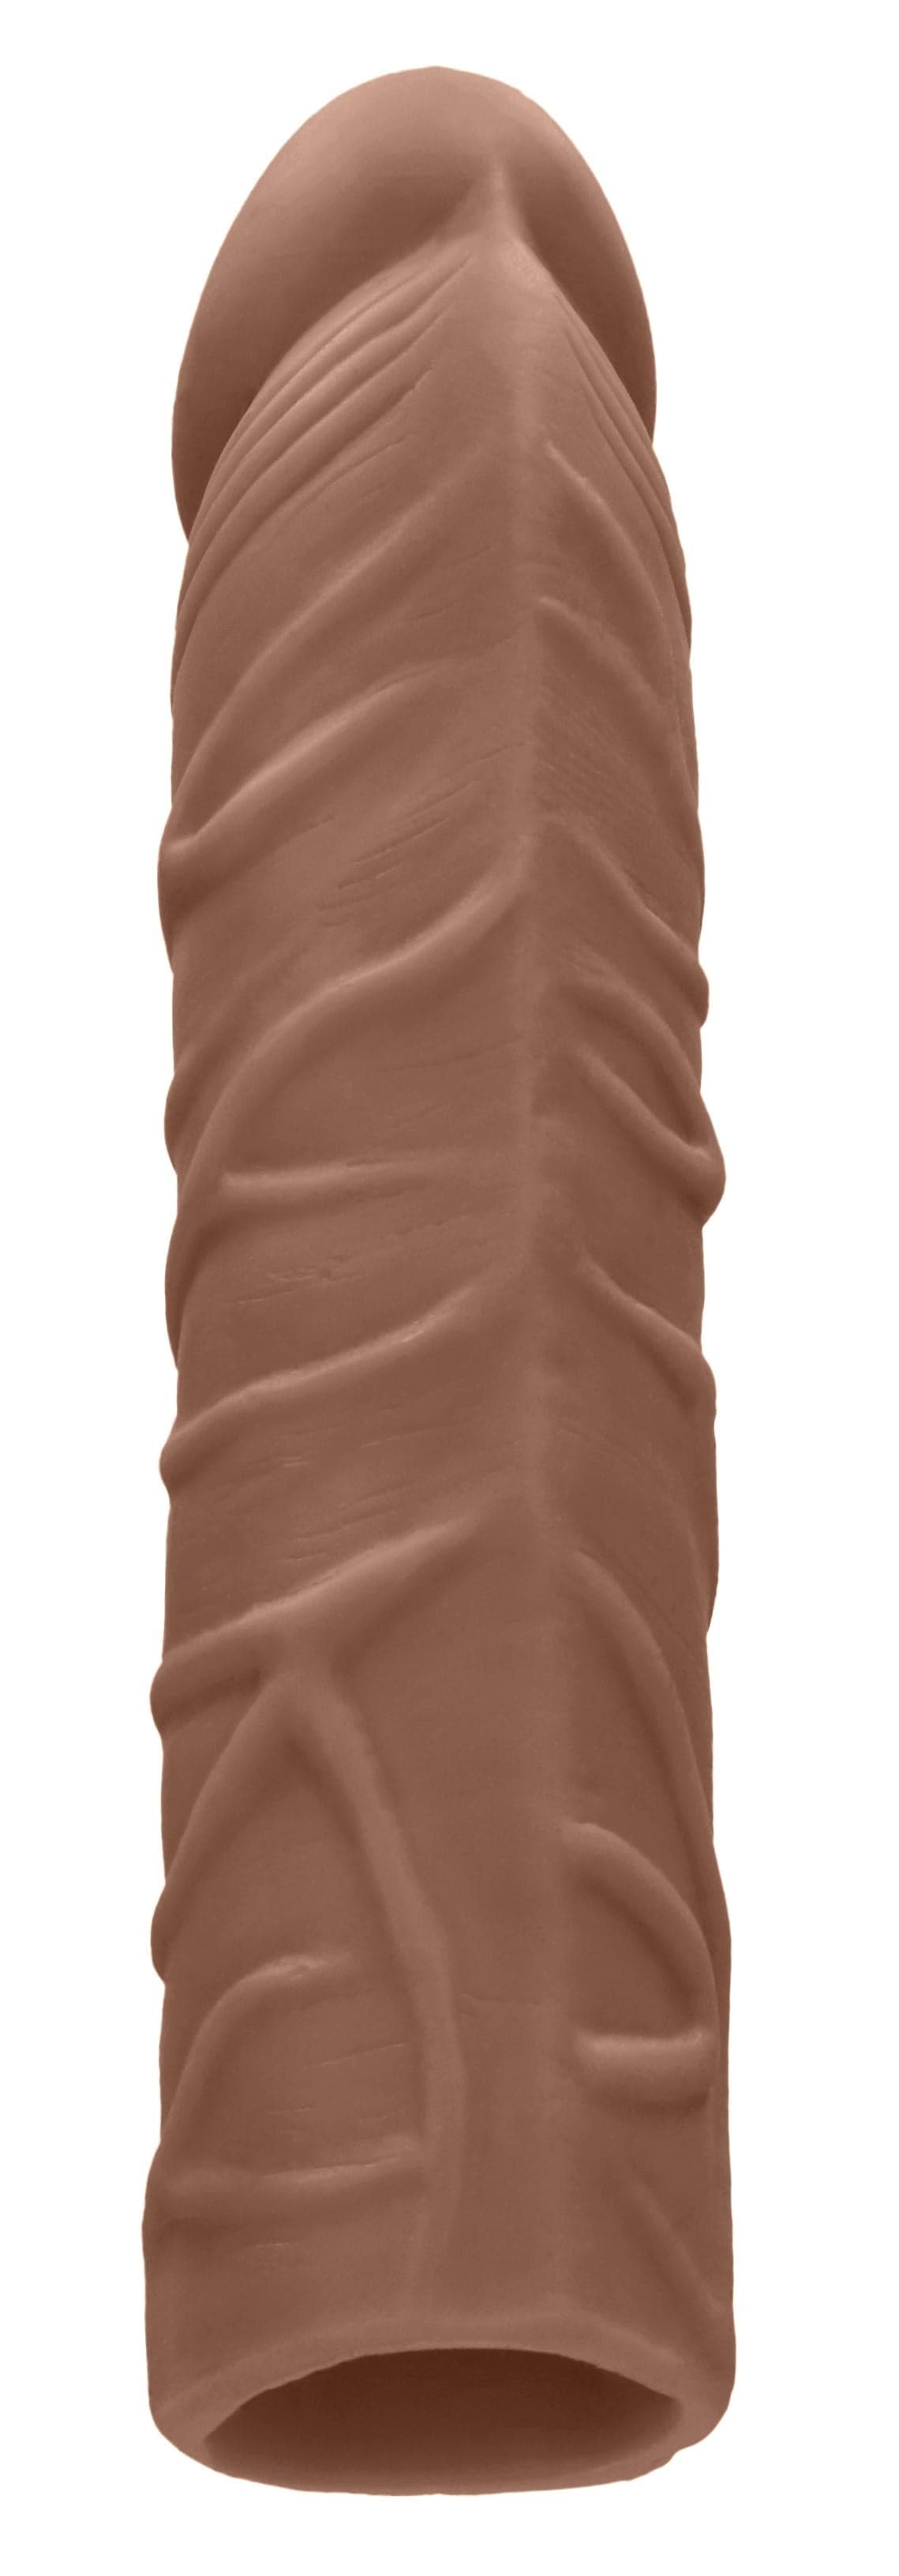 7 inch penis sleeve tan